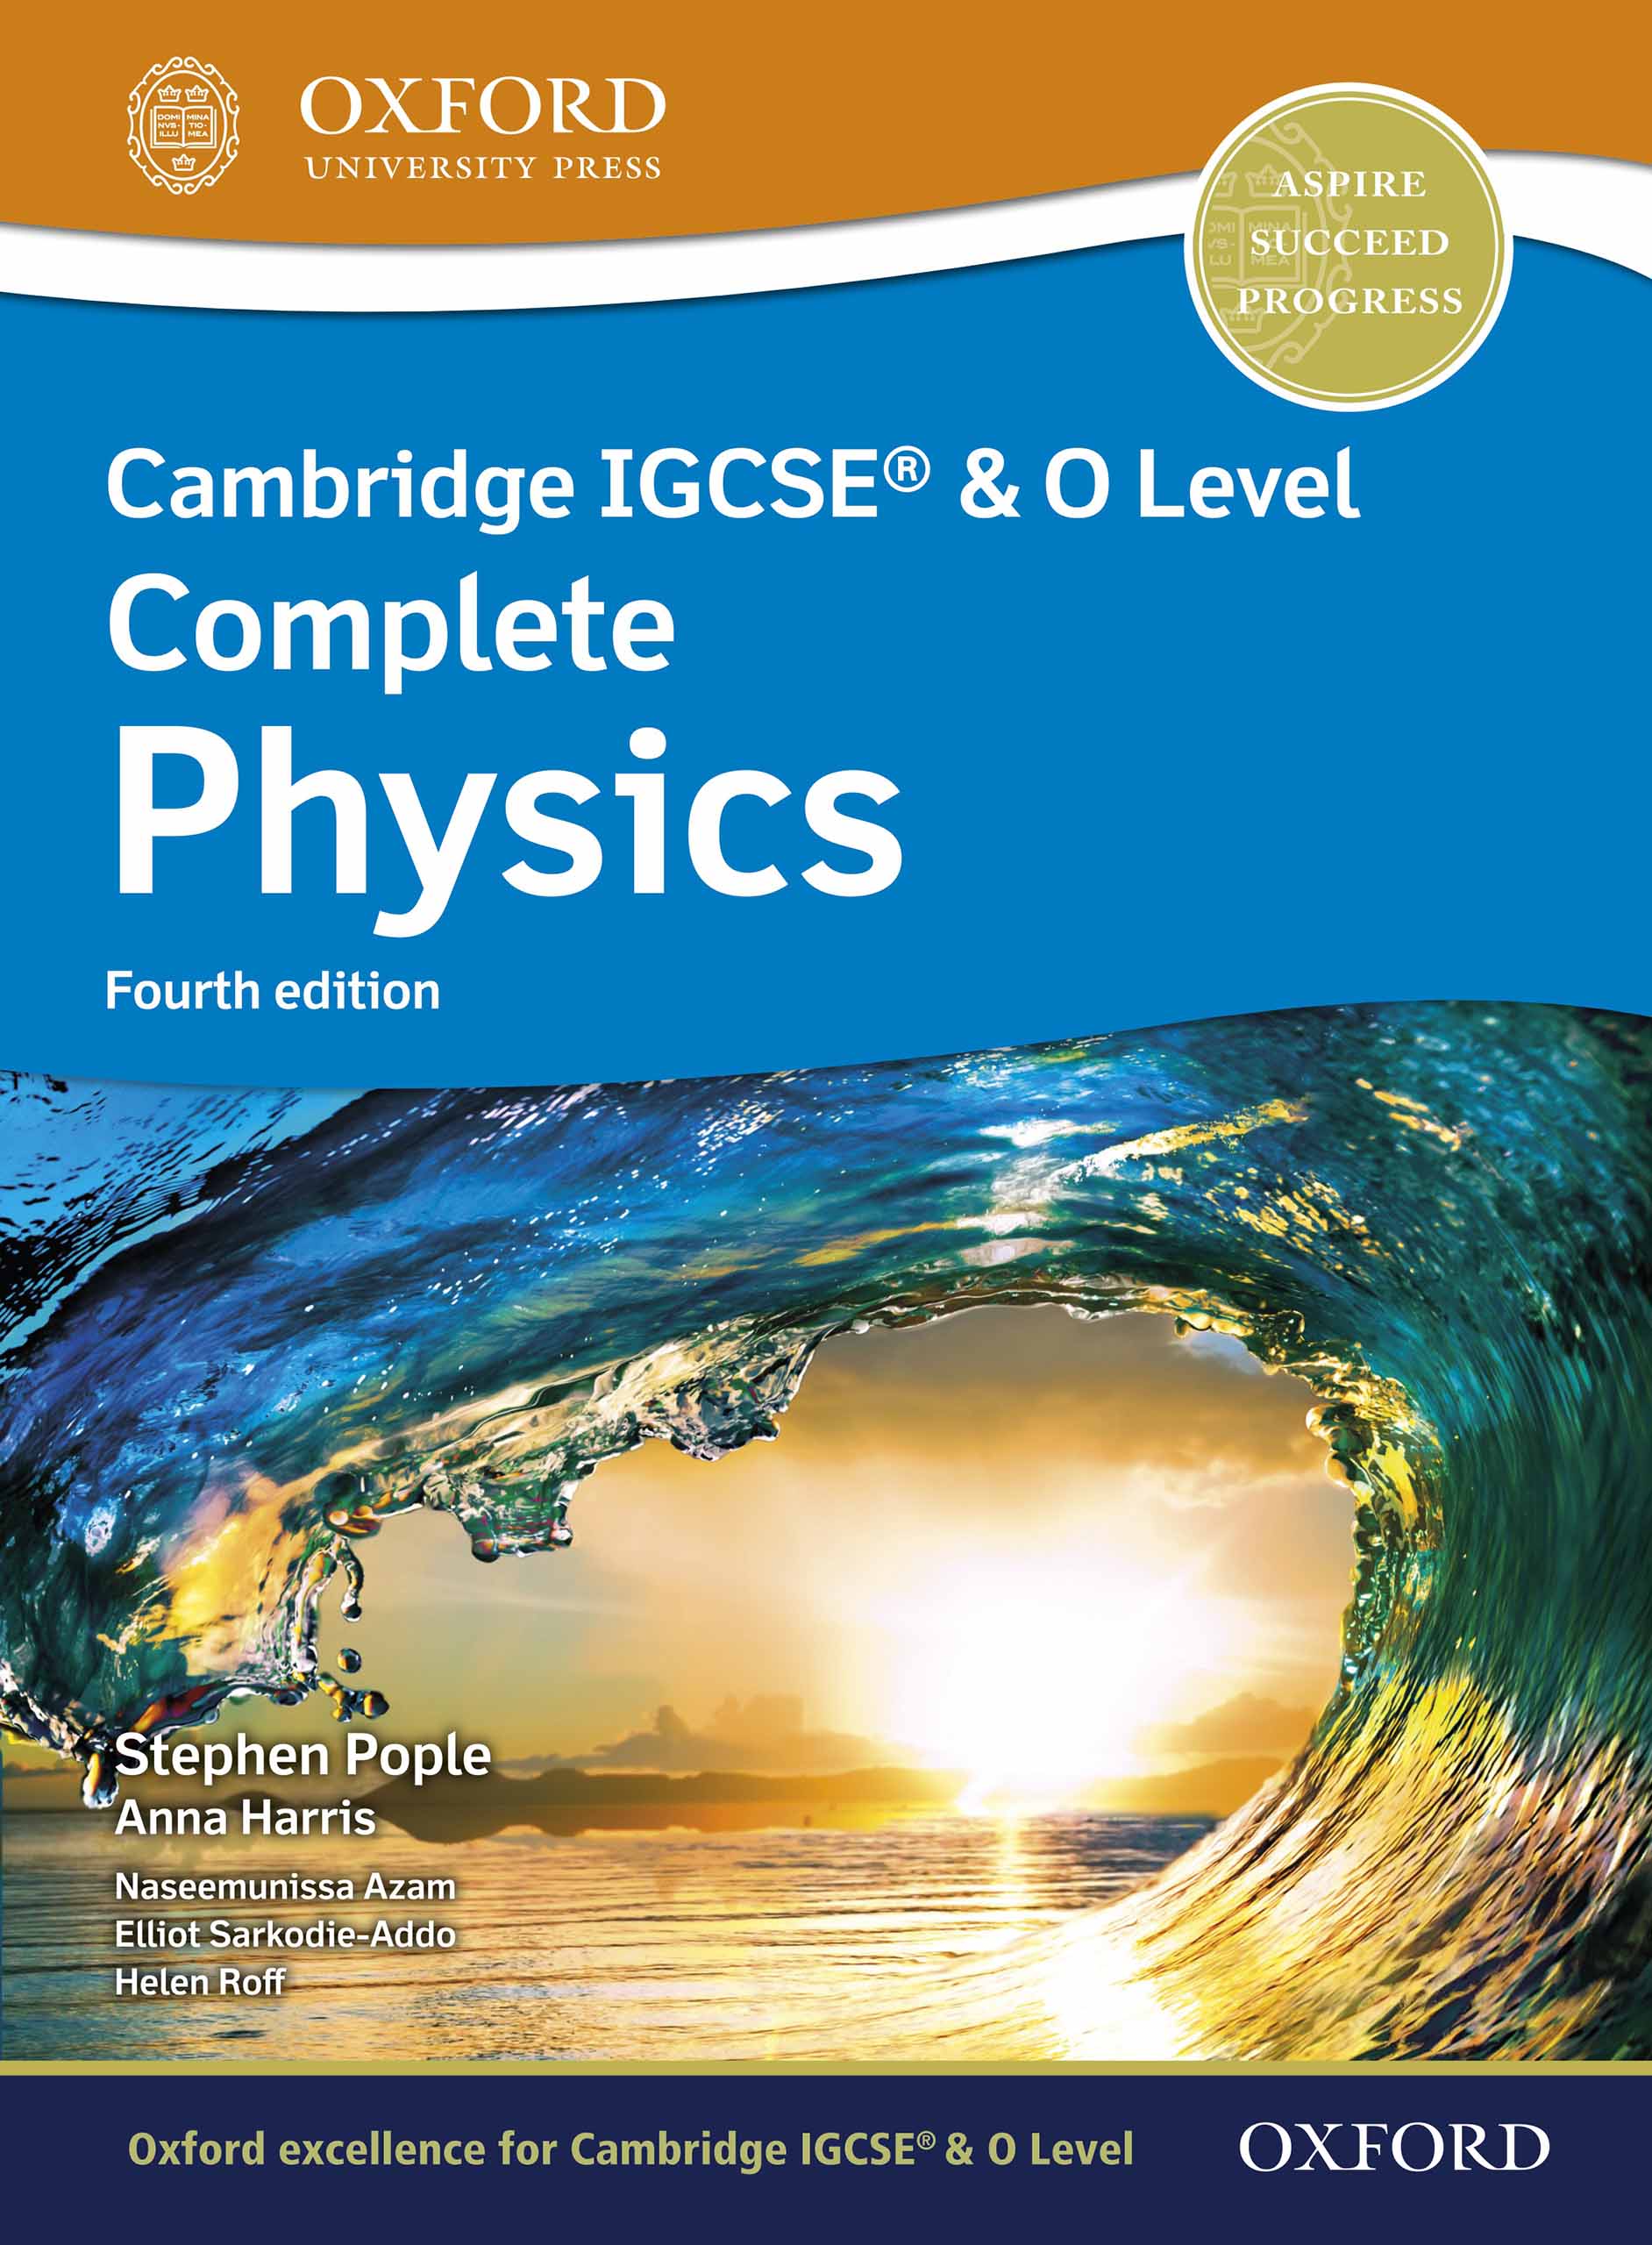 [PDF] Ebook Oxford Cambridge IGCSE and O Level Complete Physics